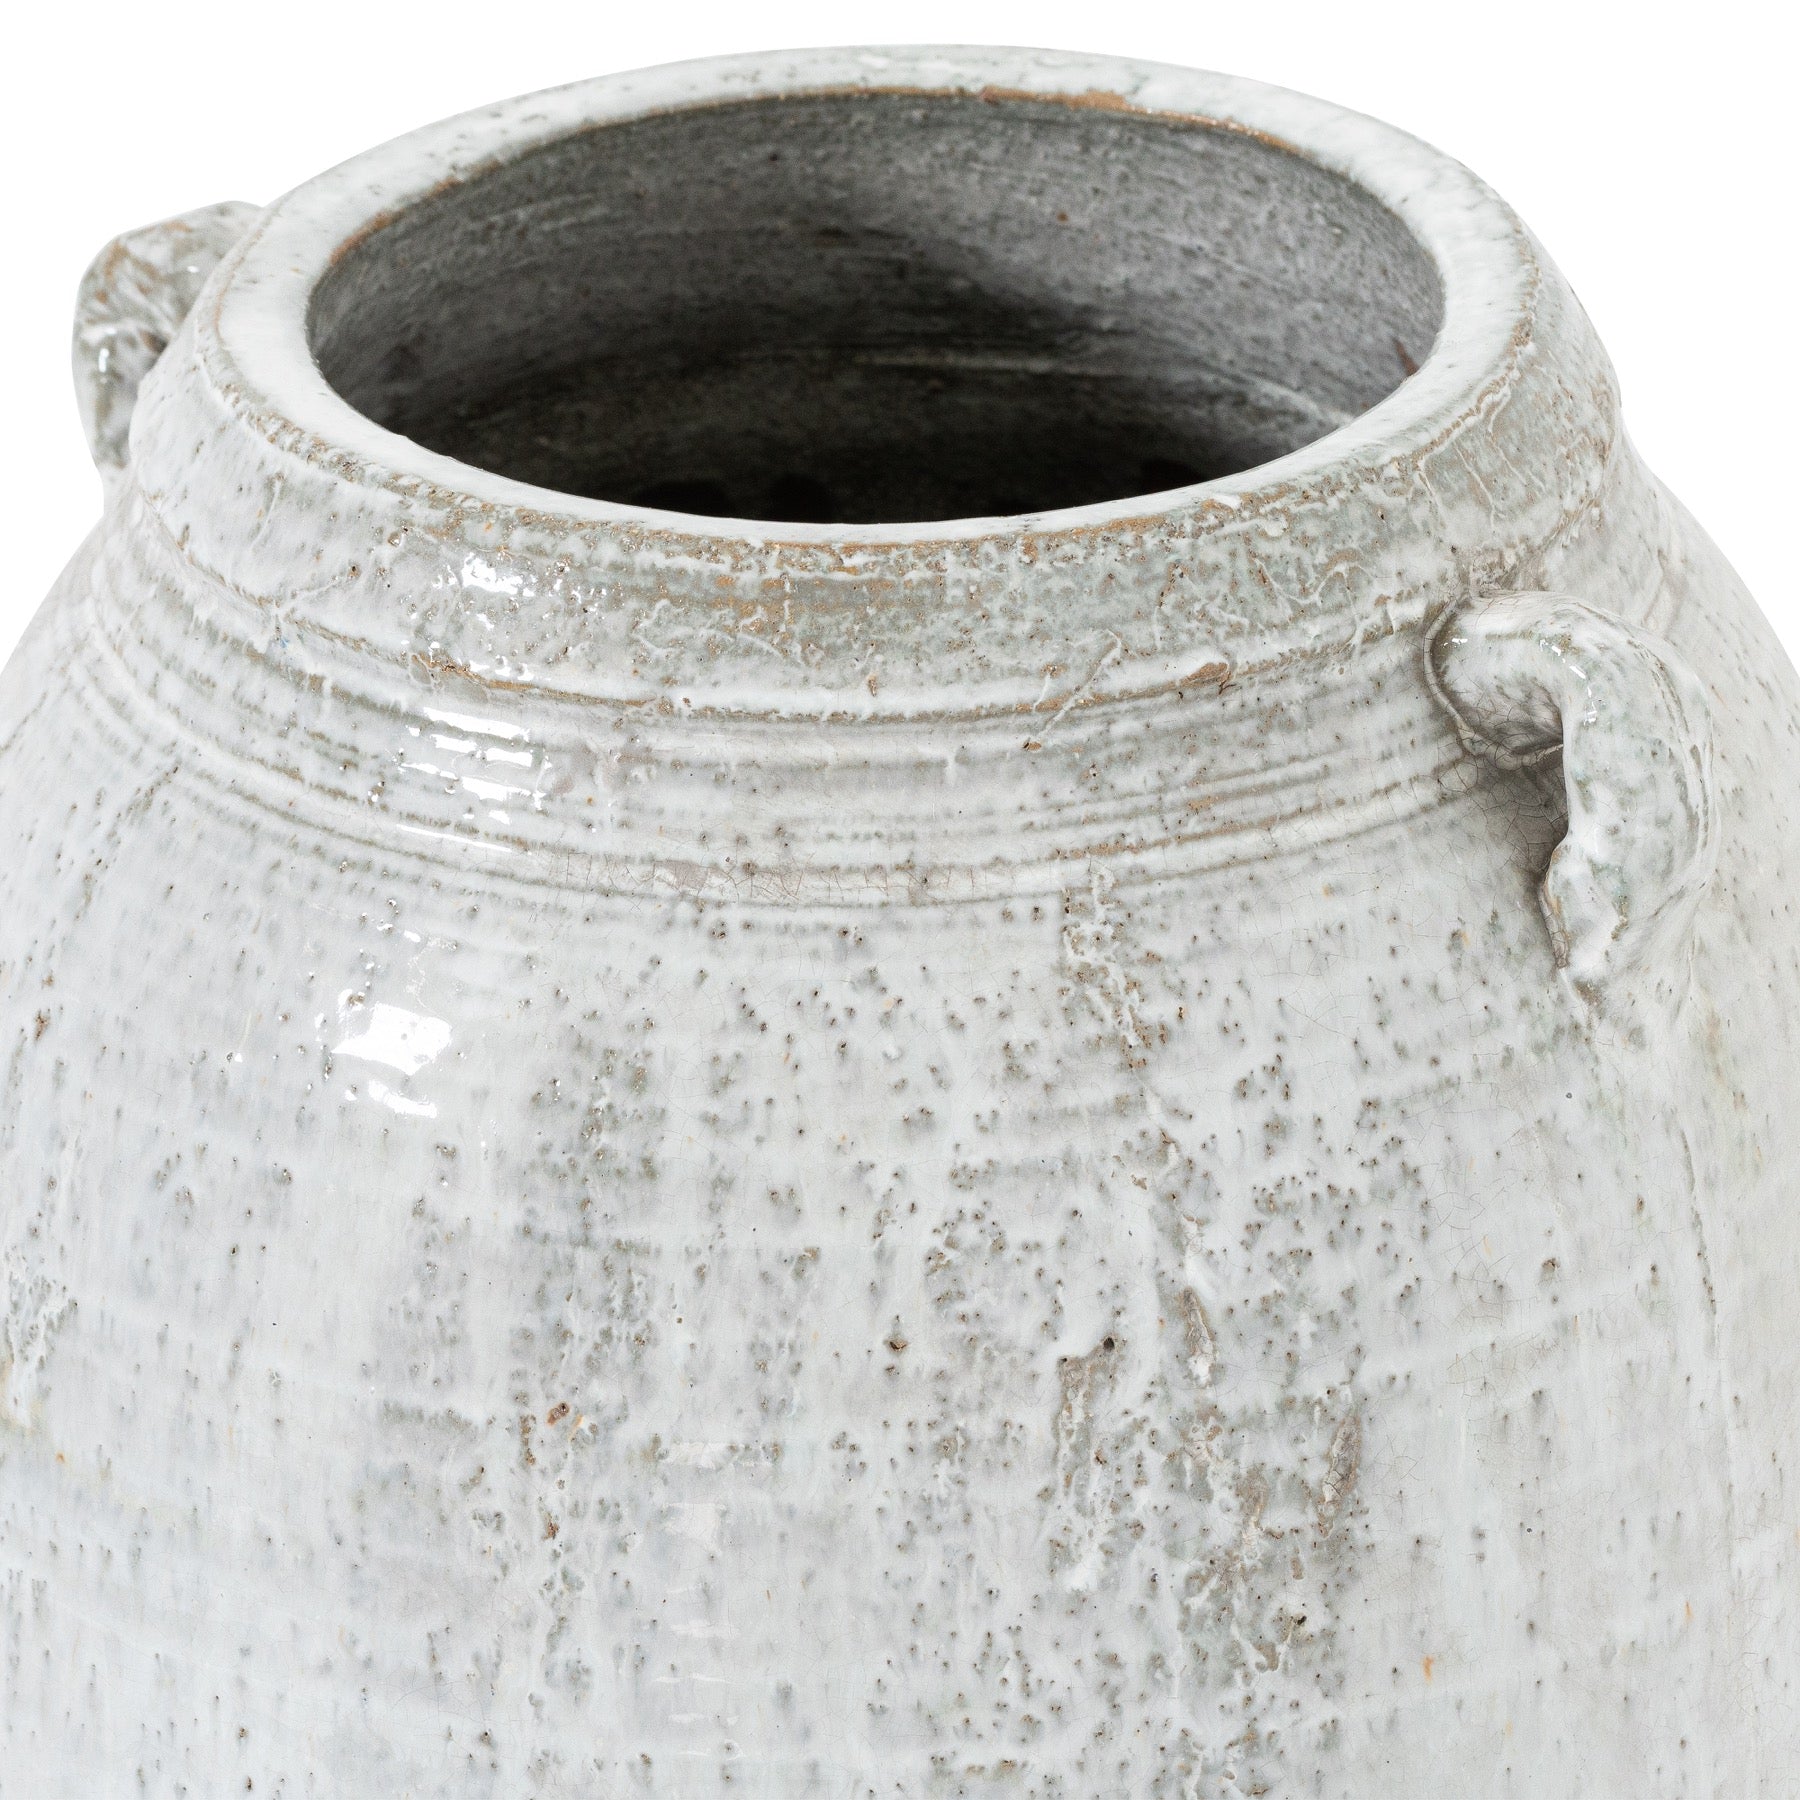 Large Stone Vase - 2 Sizes